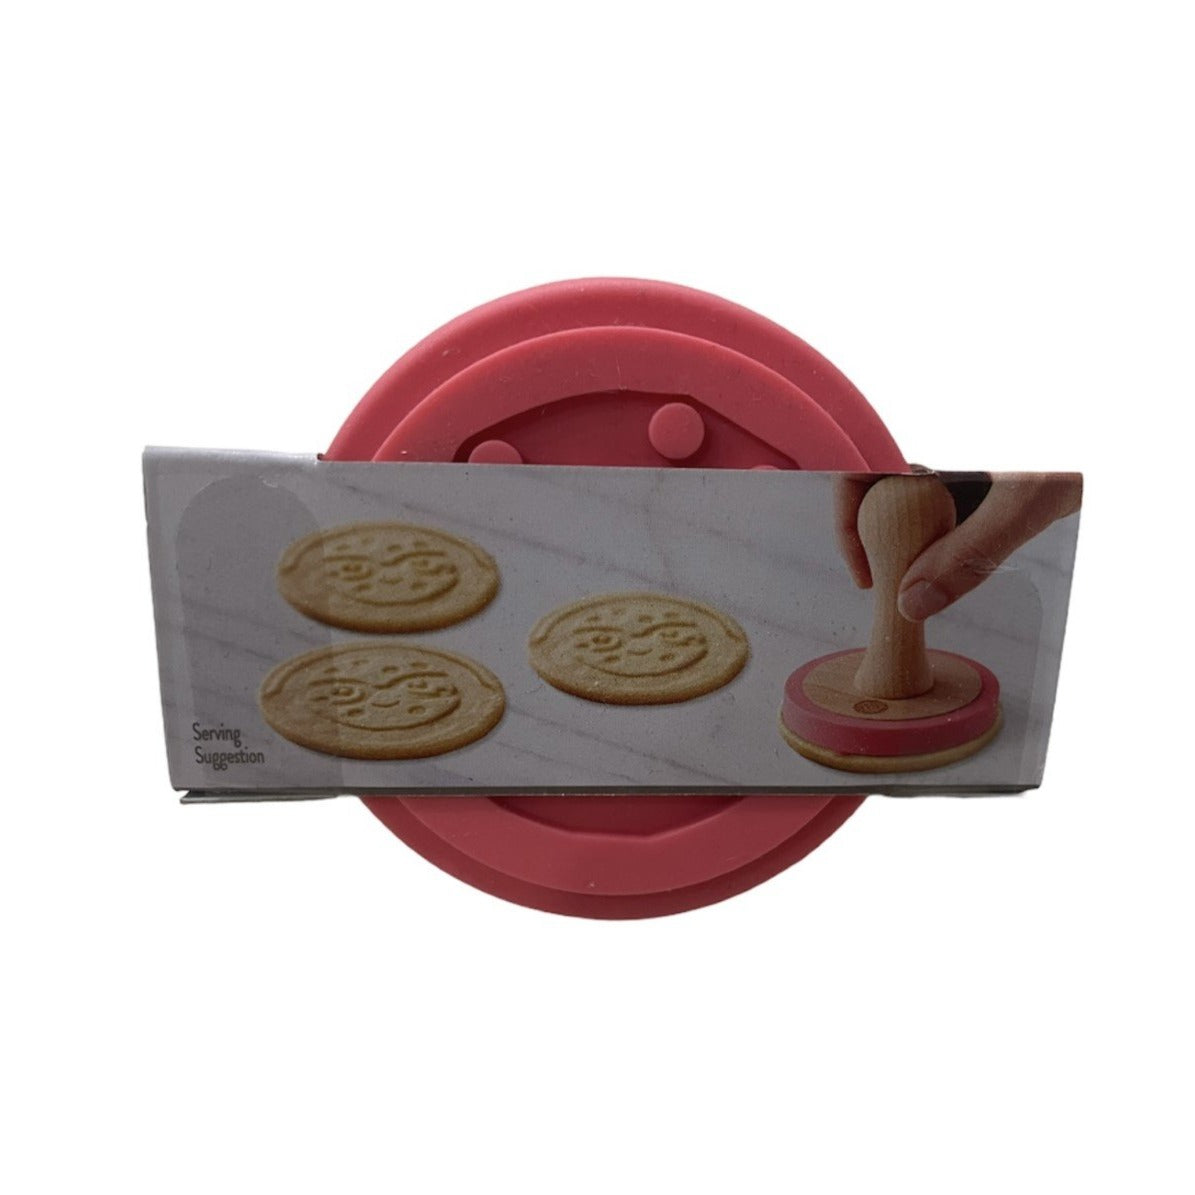 Rosanna Pansino By Wilton Nerdy Nummies Round Cookie Stamp Baking